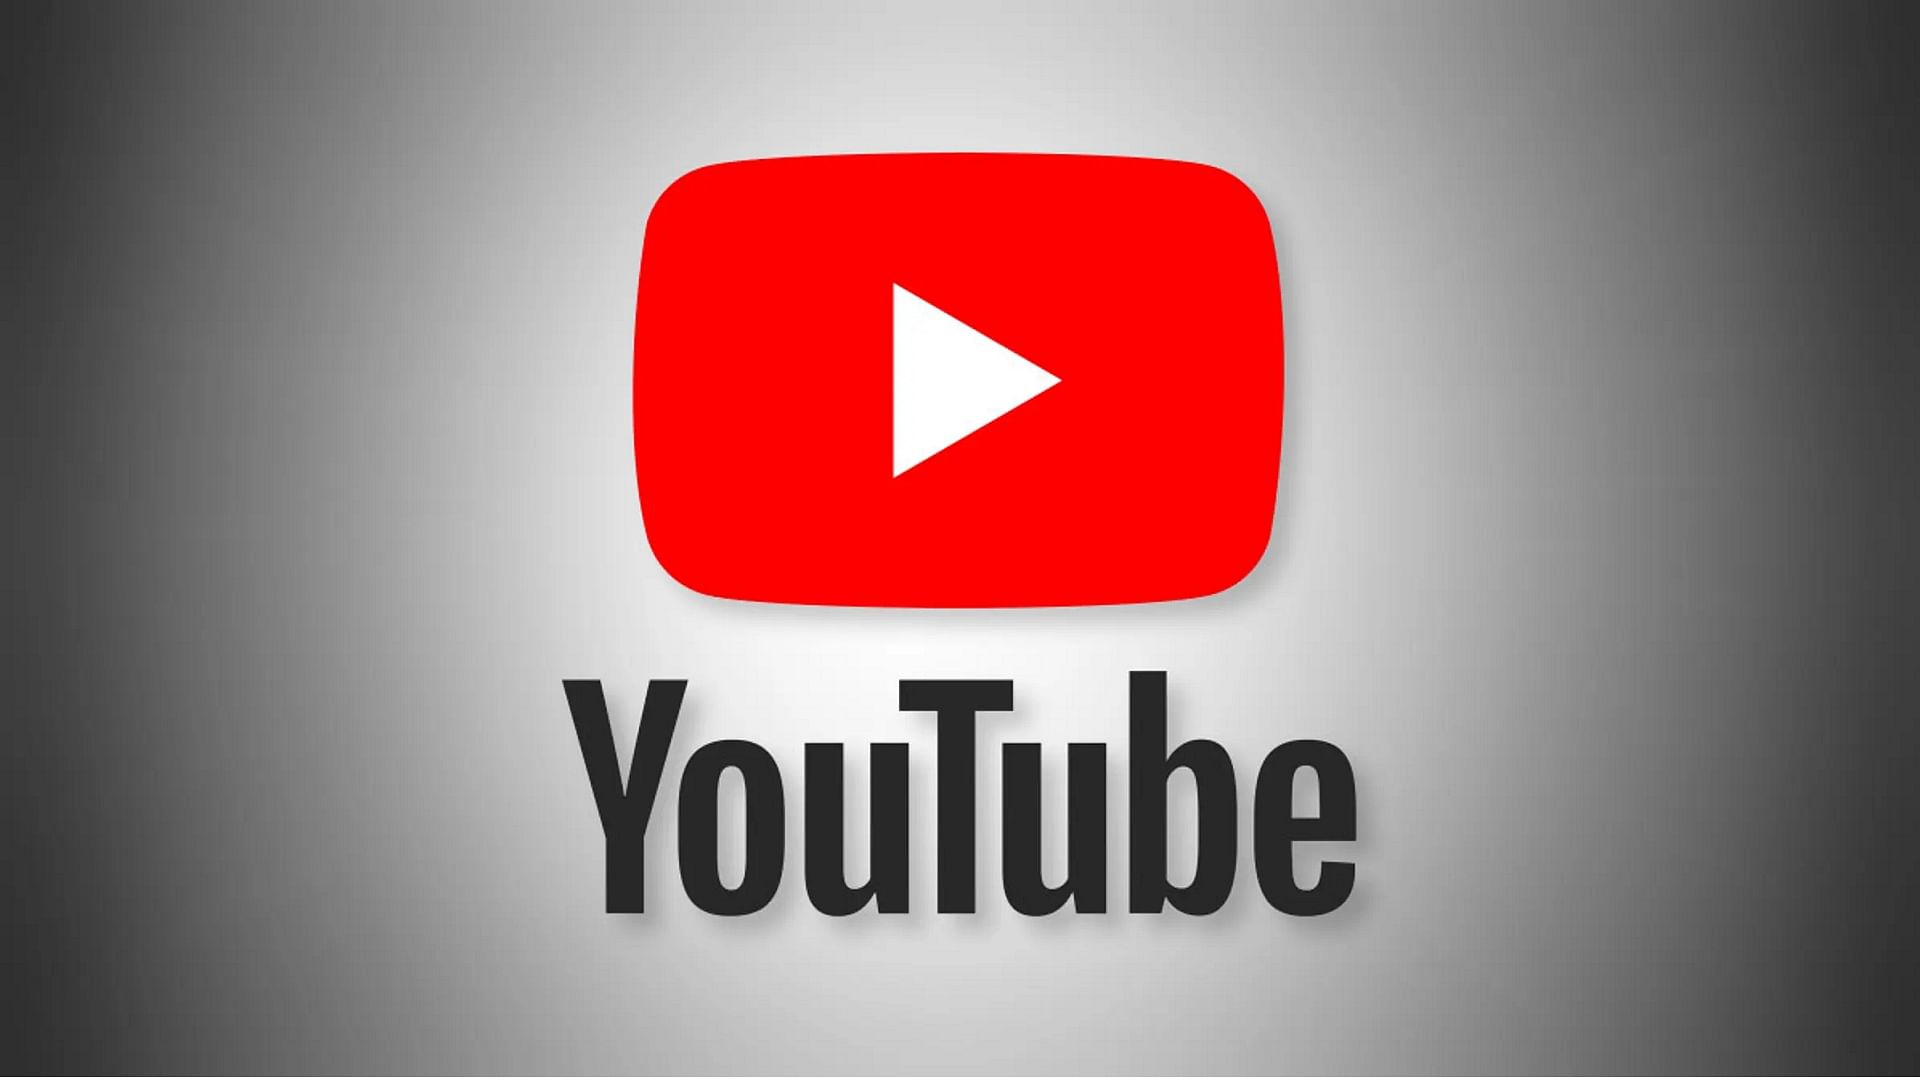 youtube:यूट्यूब ने अपने प्लेटफॉर्म से हटाए 56 लाख वीडियो, इनमें से 17 लाख भारत के, जानें क्या है वजह - youtube removes more than 56 lakh videos for violating community guidelines -